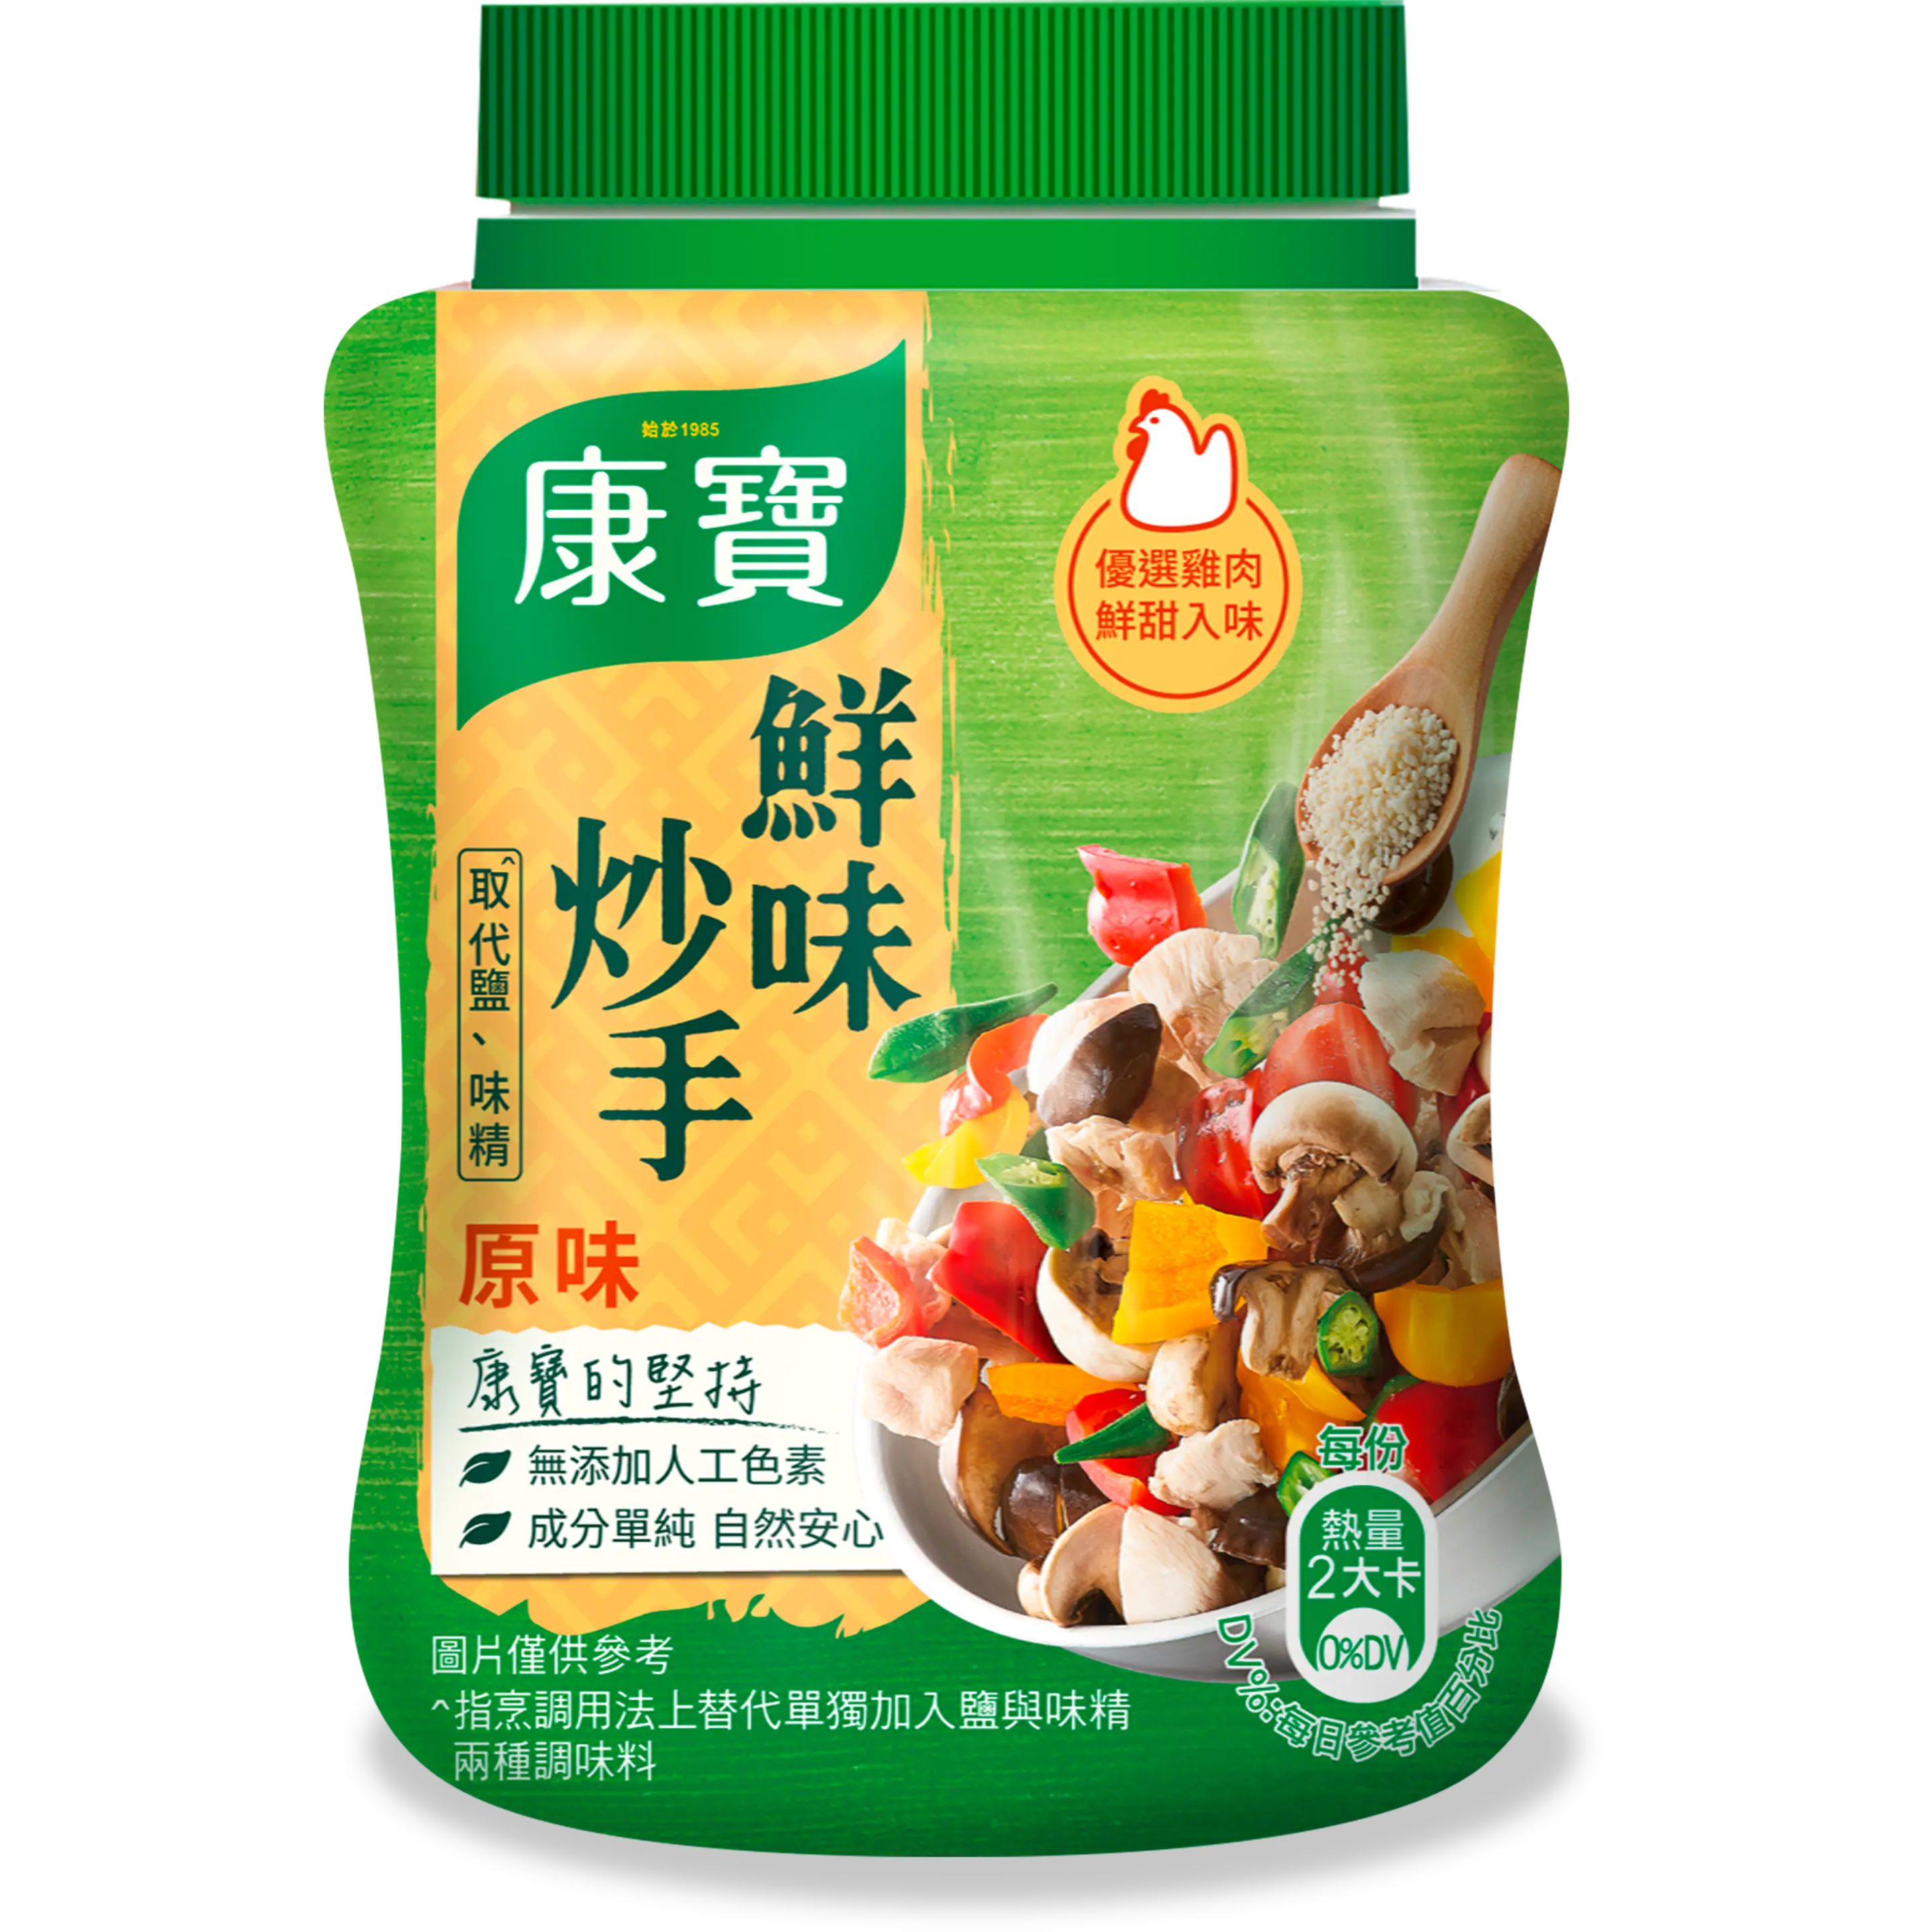 〈2種類お試しセット〉台湾クノール 鮮味炒手 原味 鶏だし 240g + 素食 椎茸だし 240g